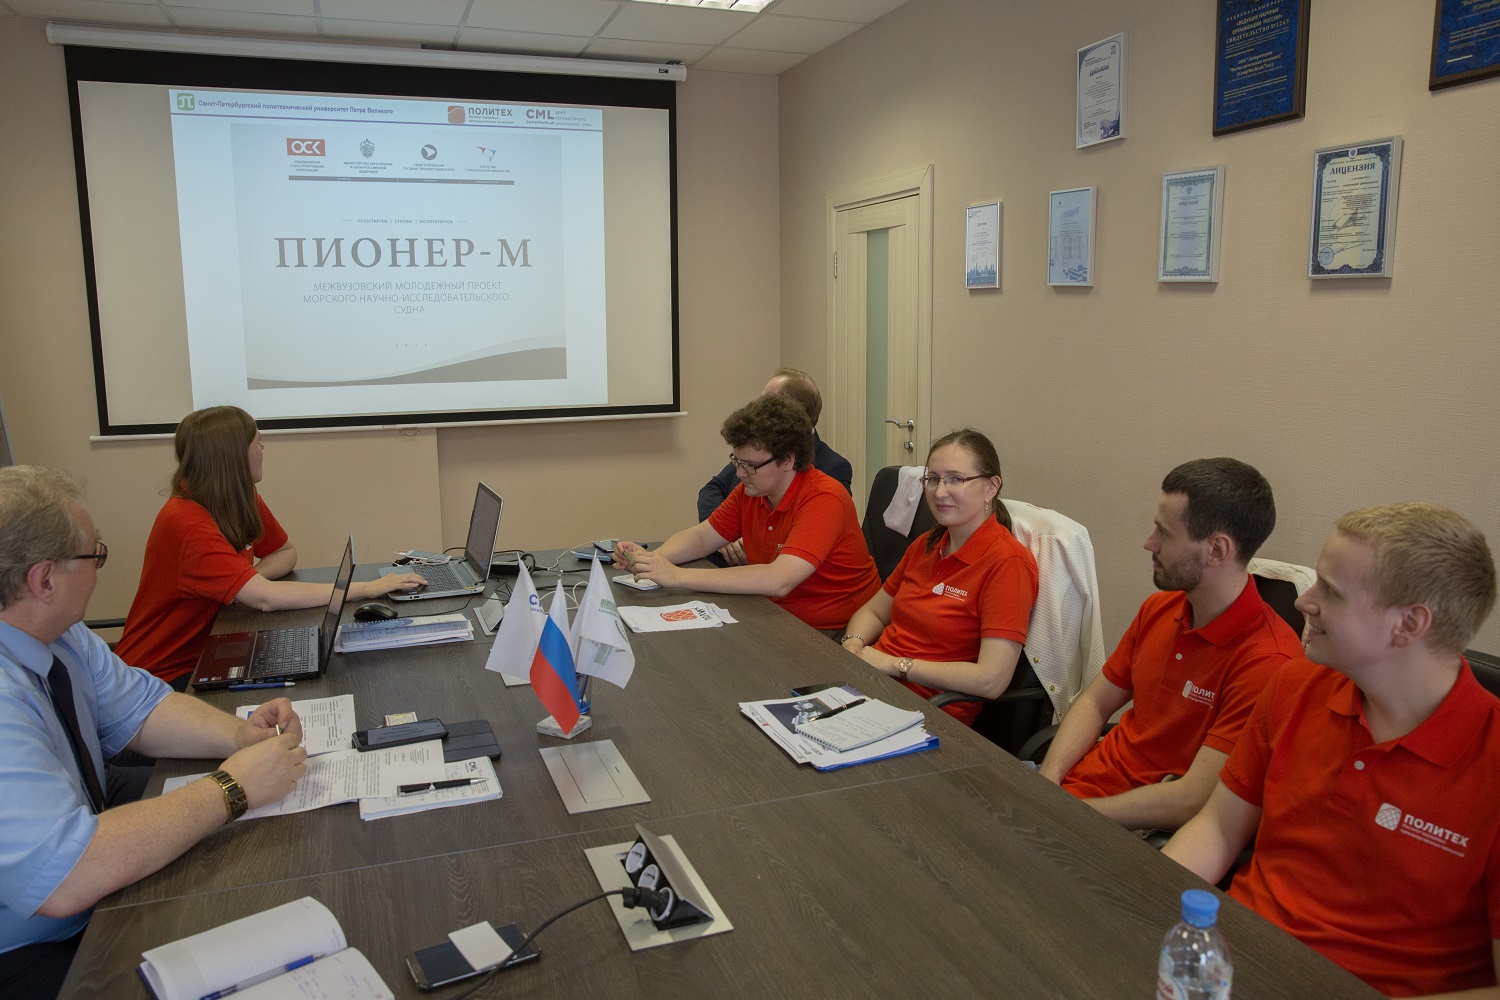 Студенты ИППТ СПбПУ - участники проекта "Пионер-М"